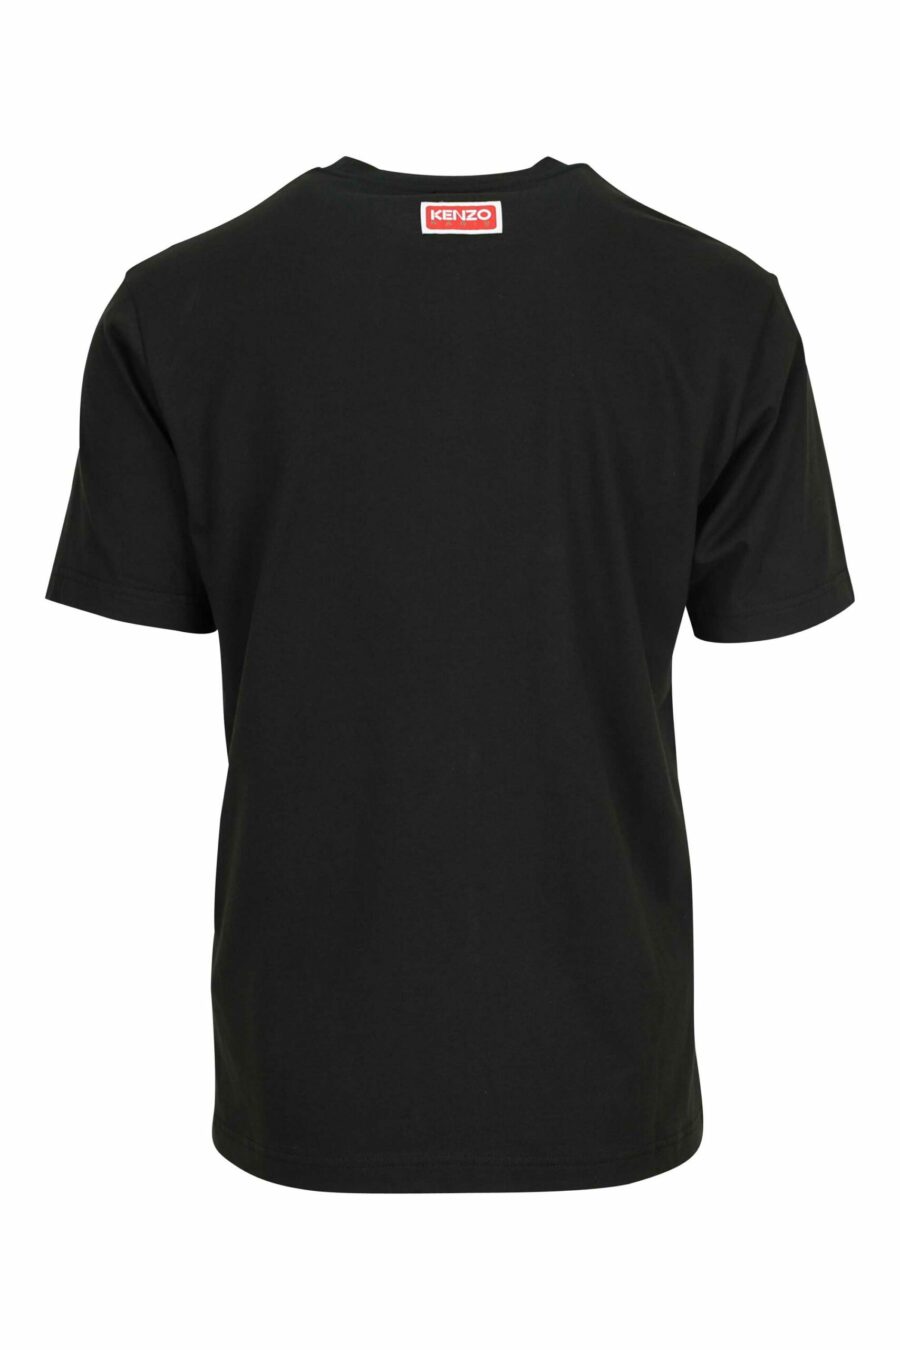 Black T-shirt with maxilogo "kenzo elephant" - 3612230625624 1 scaled